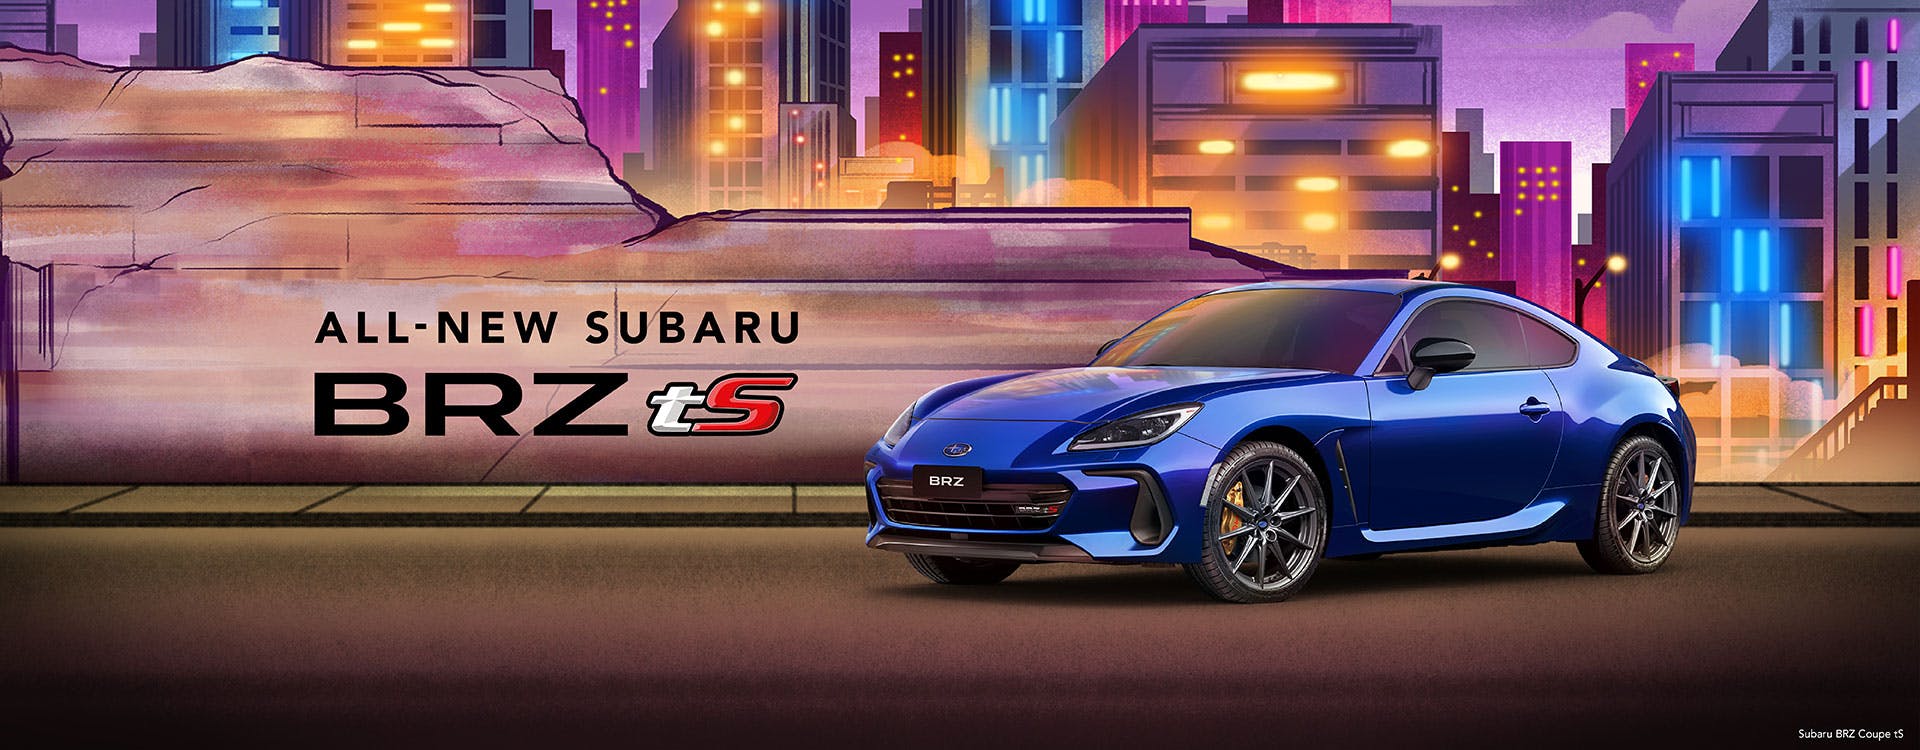 Vehicle background